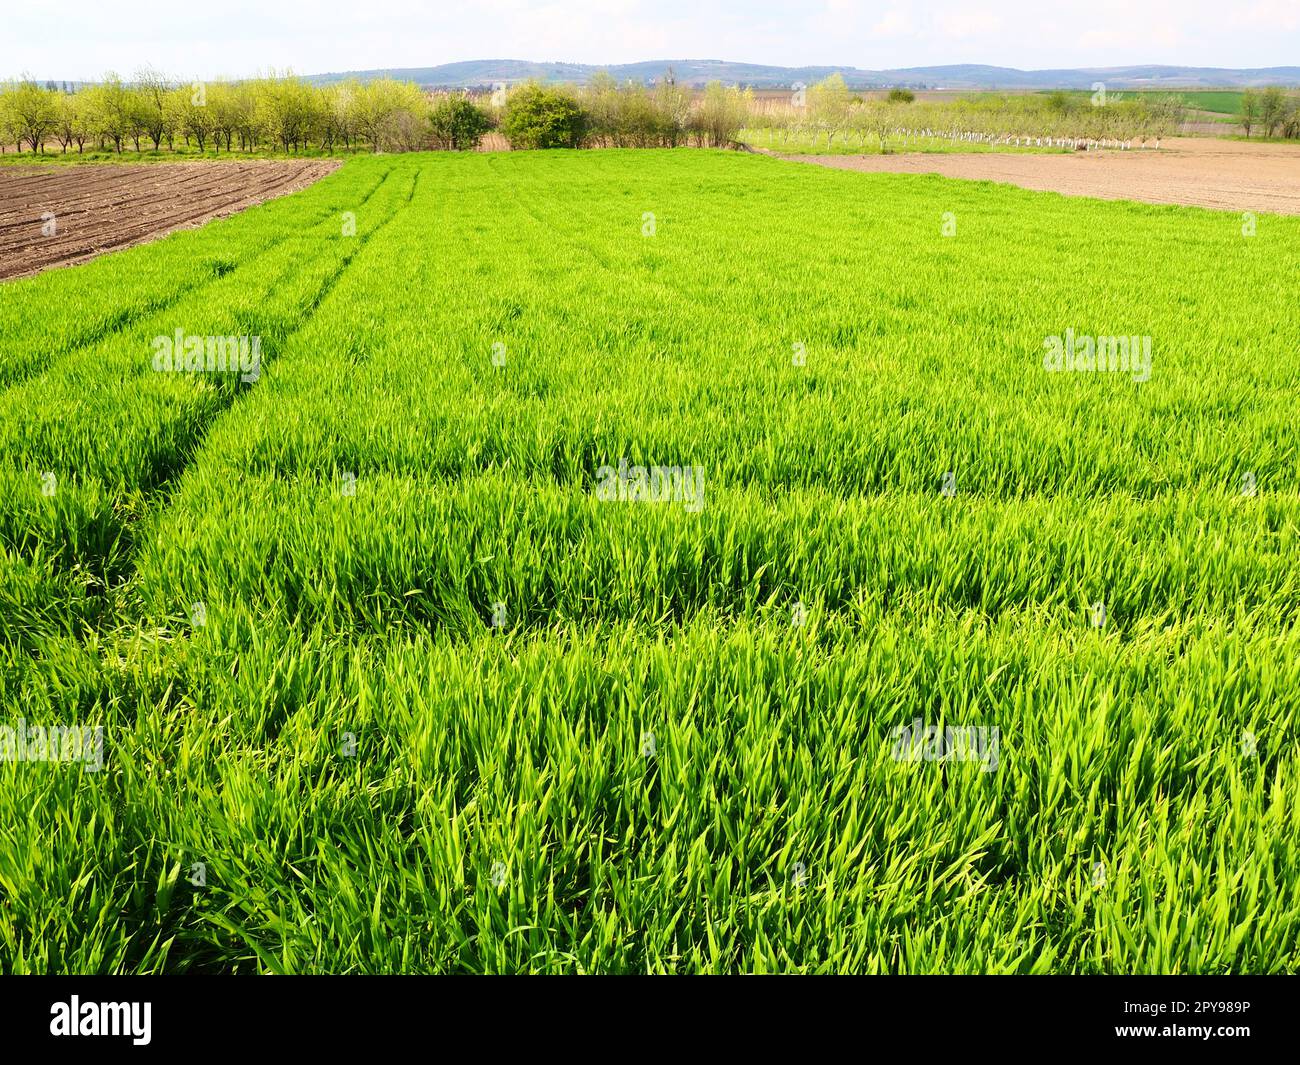 Wunderschöne grüne Weizenfelder auf dem Land. Grünes Weizenfeld. Grüne Weizensprossen auf dem Feld. Grünes Gras Stockfoto